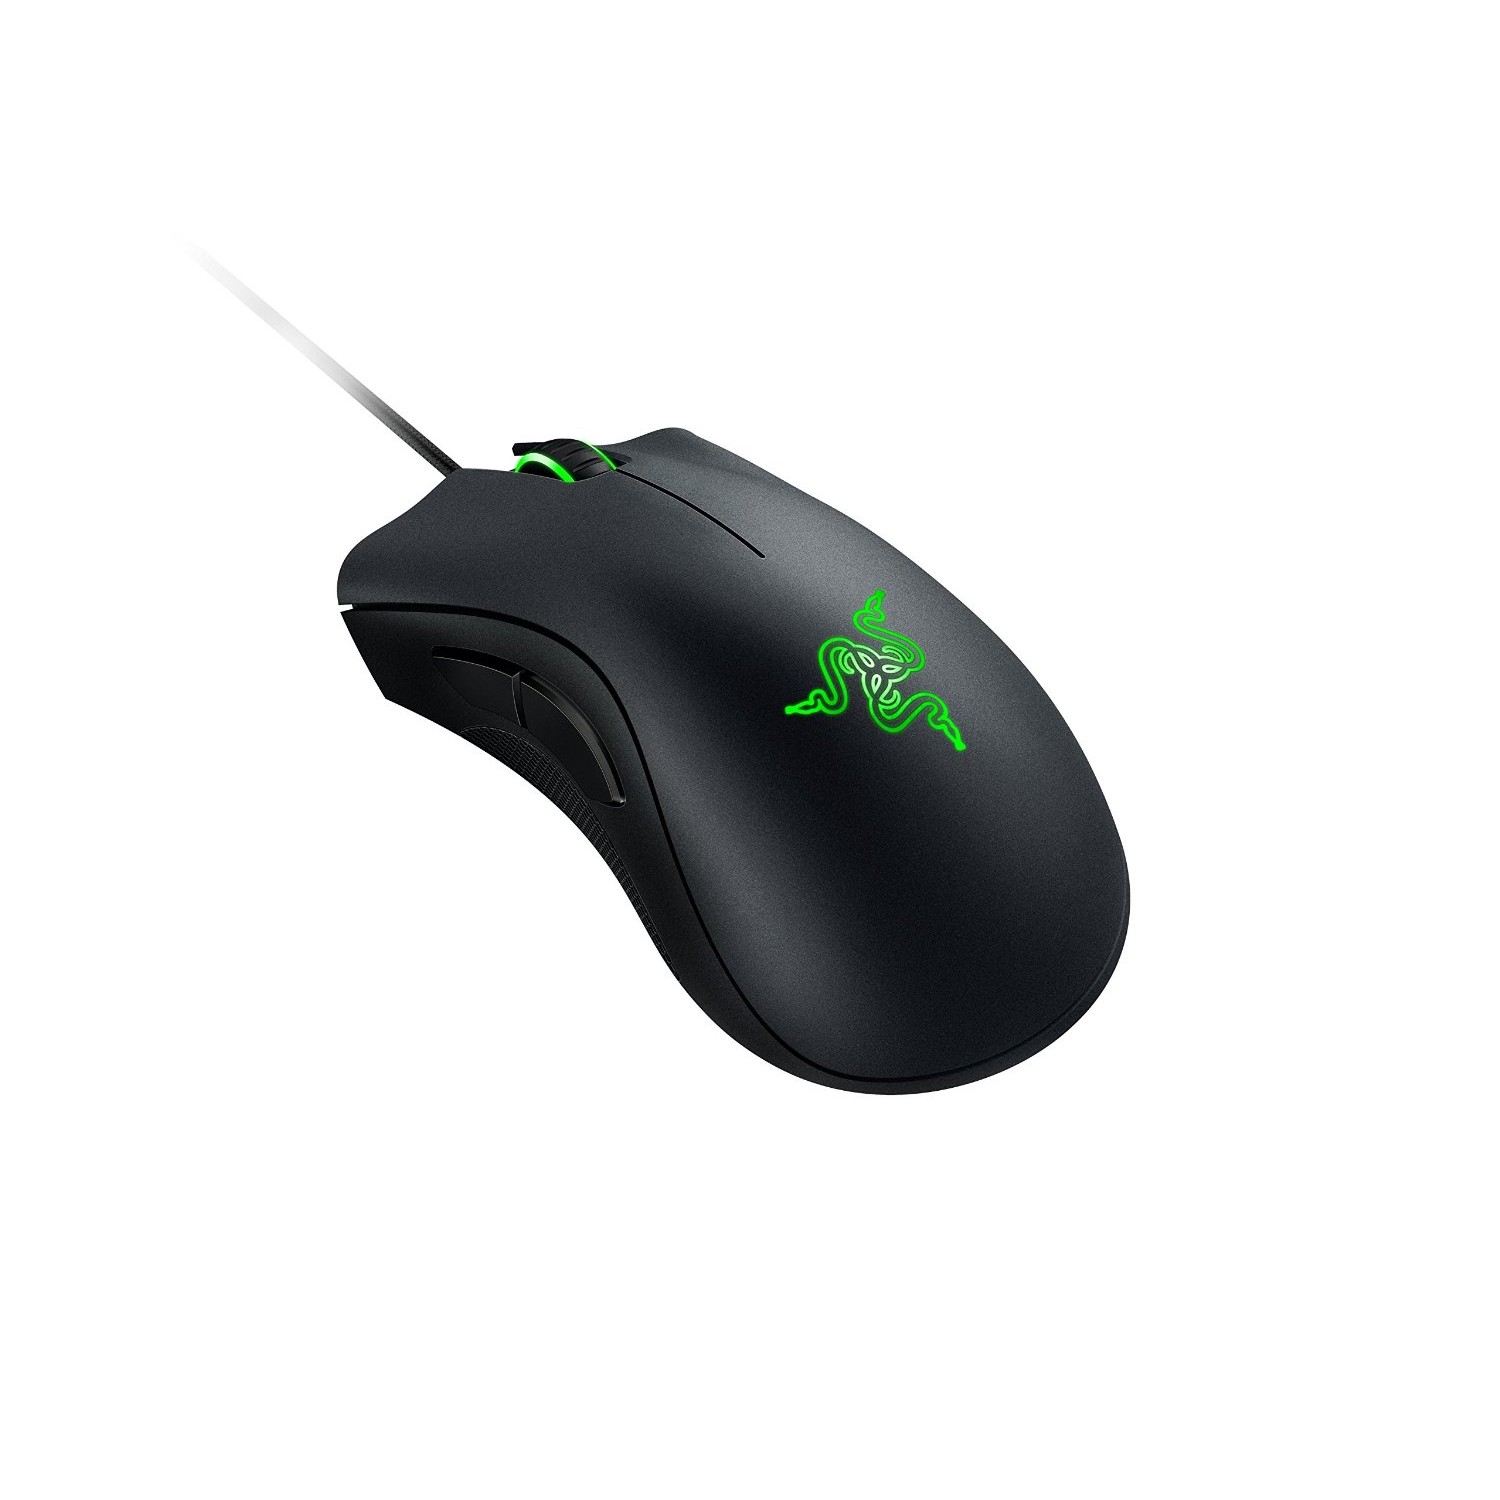 Razer Deathadder 2014 Chroma Gaming Mouse-2